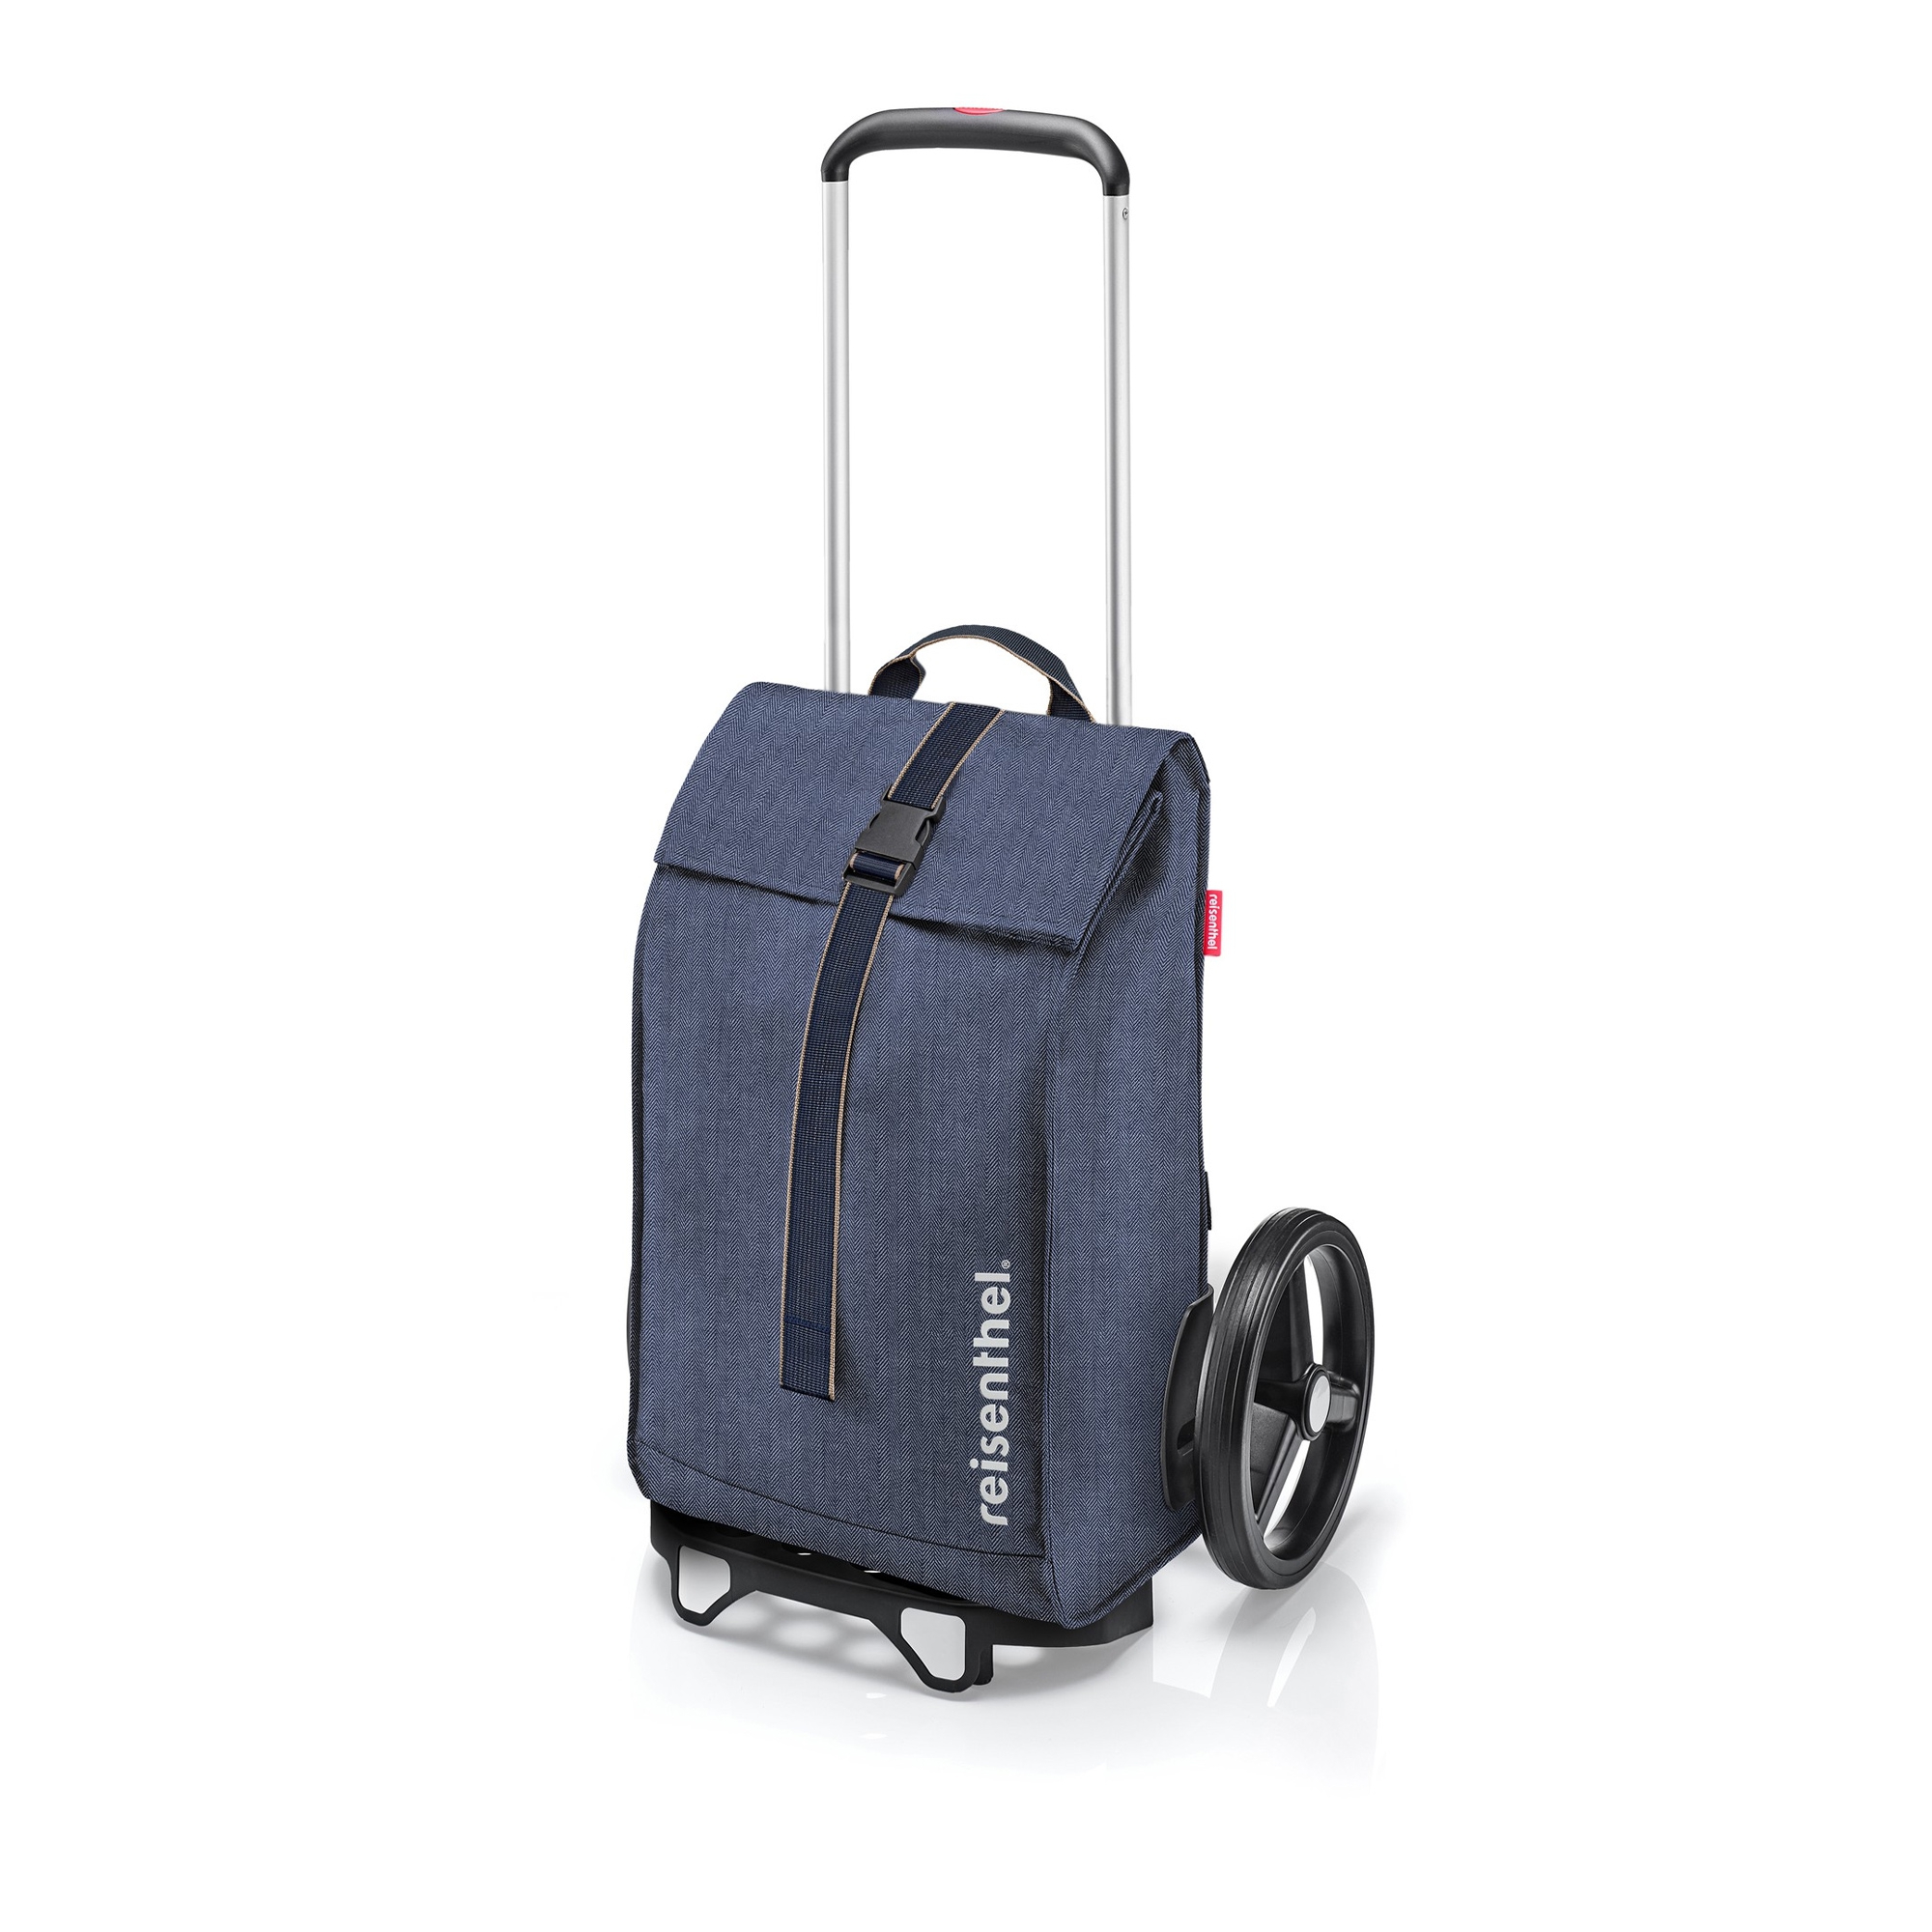 Reisenthel Easyshoppingbag for Shopping Cart Navy Blue New Folding